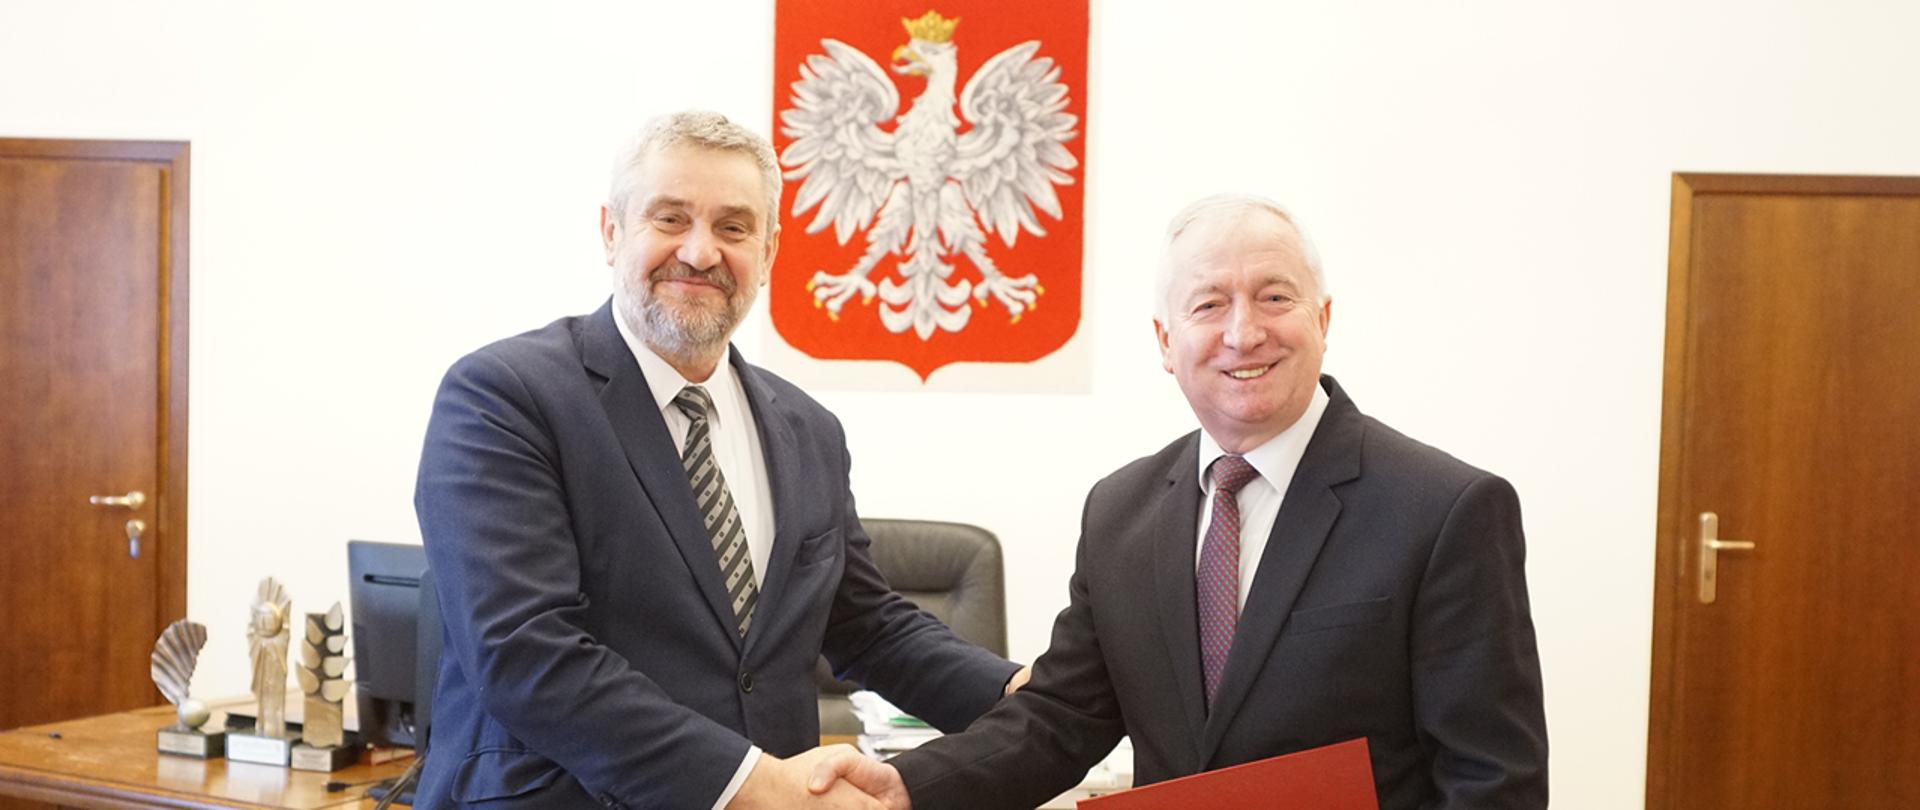 Nadanie nominacji podsekretarz stanu Ryszard Kamiński